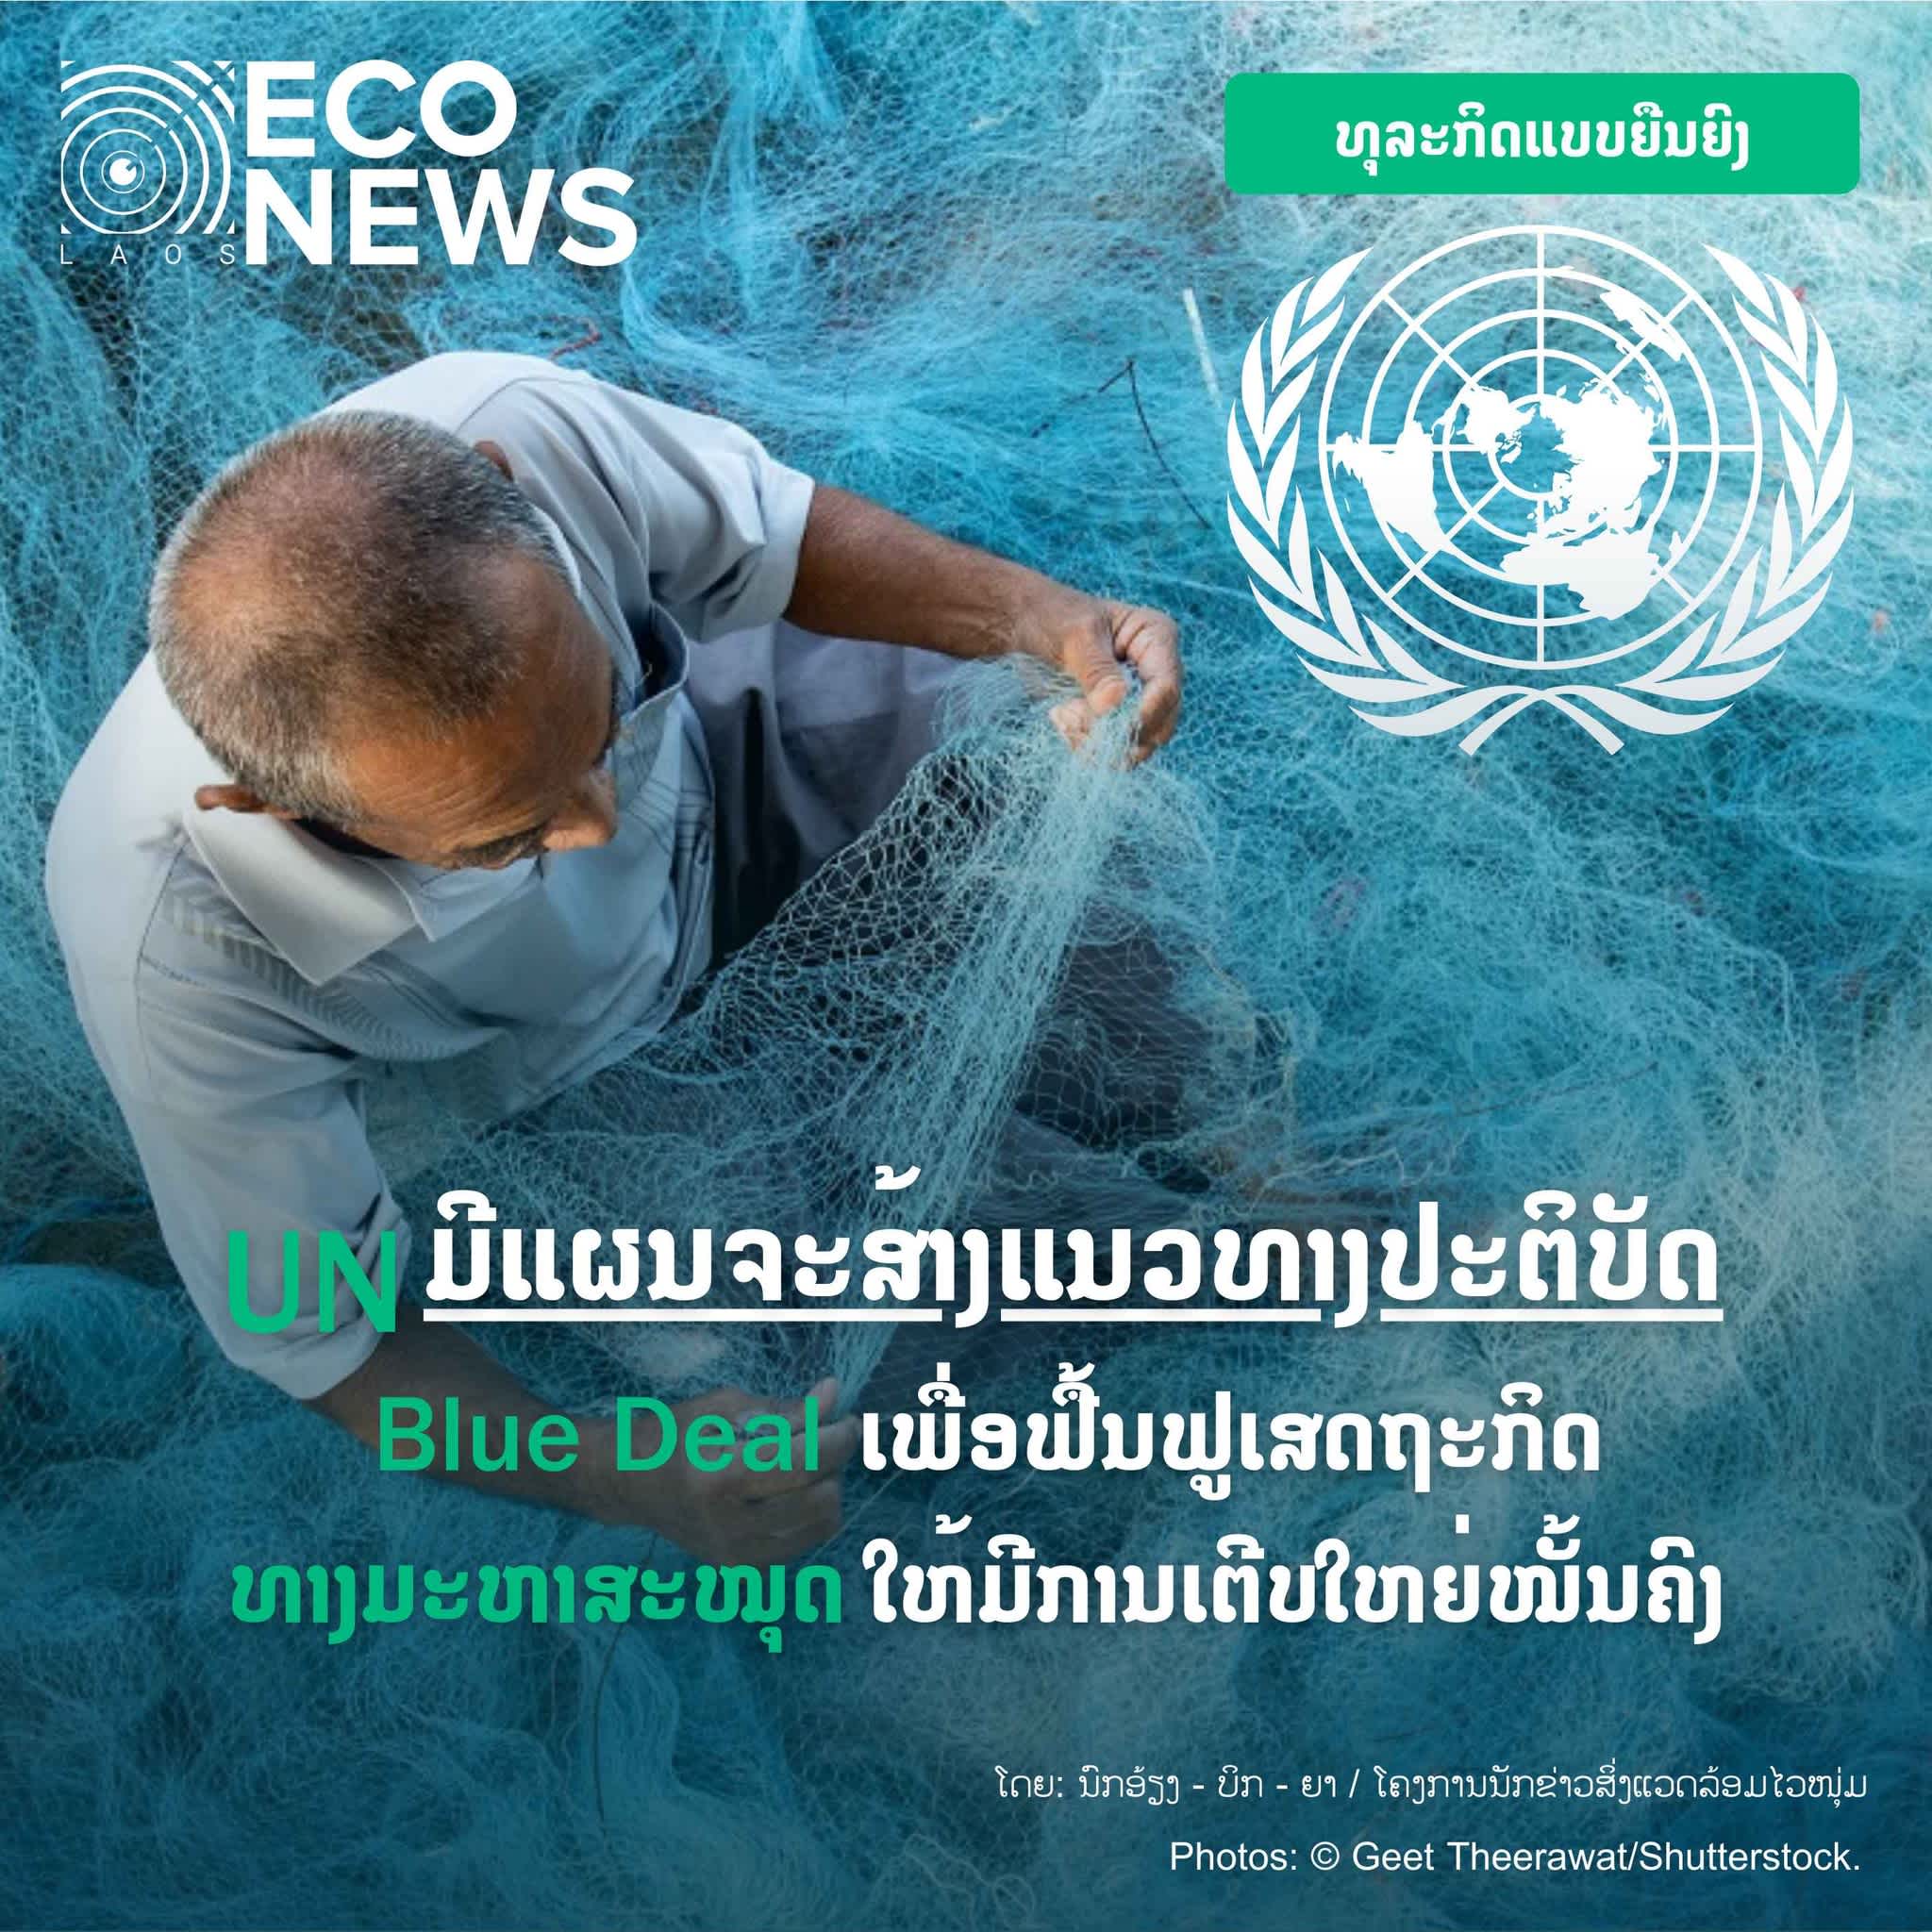 UN ມີແຜນຈະສ້າງແນວທາງປະຕິບັດ “Blue Deal” ເພື່ອຟື້ນຟູເສດຖະກິດທາງ “ມະຫາສະໝຸດ” ໃຫ້ມີການເຕີບໃຫຍ່ຢ່າງໝັ້ນຄົງ